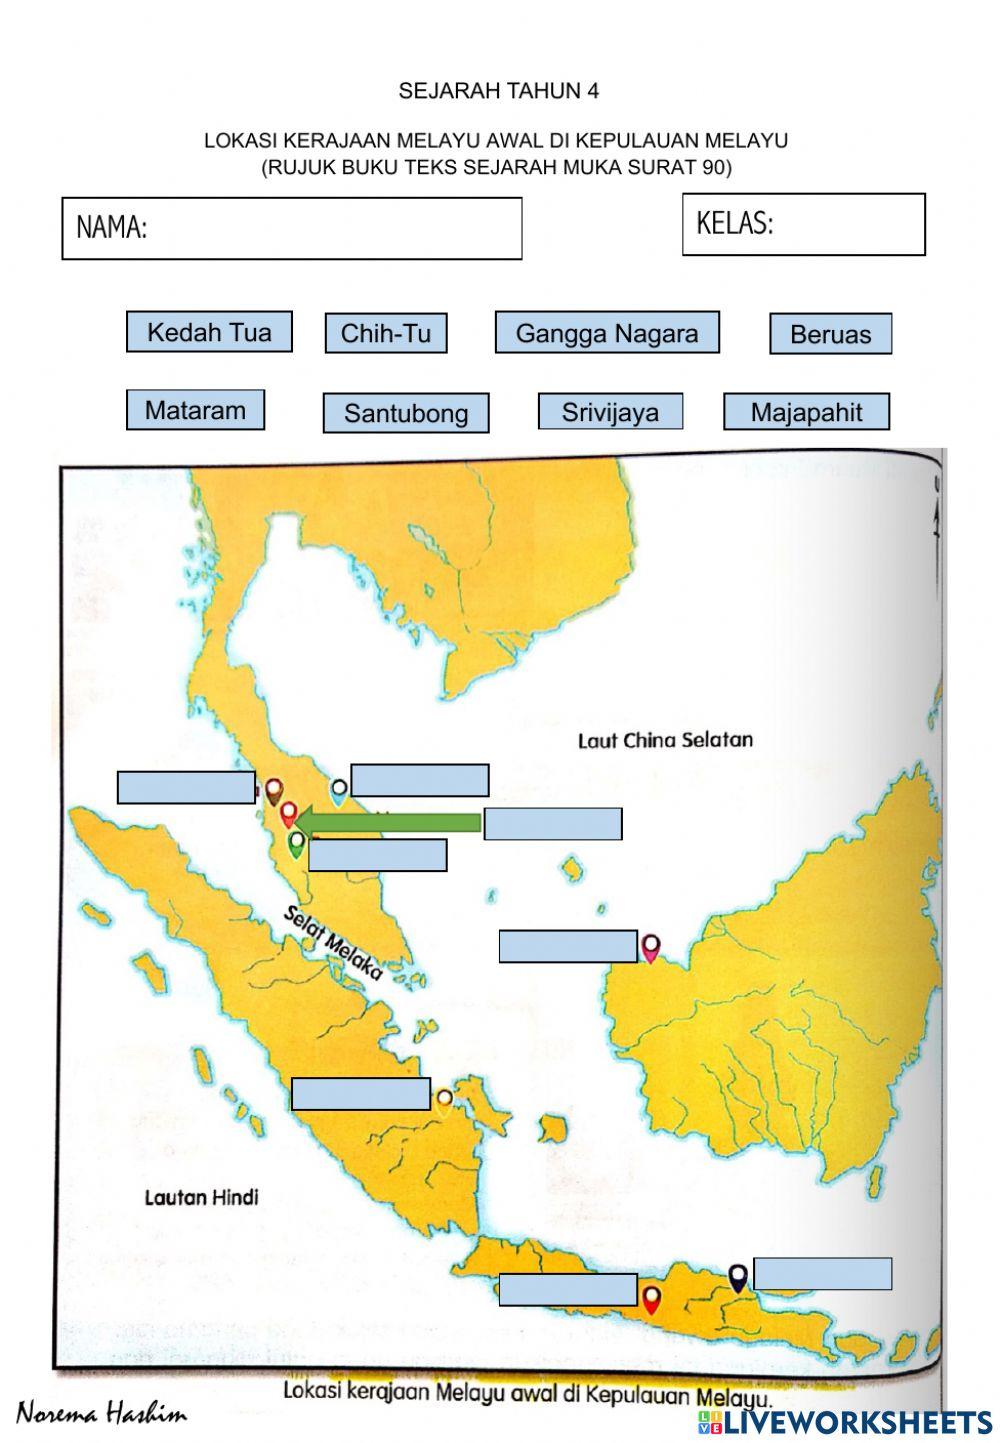 Lokasi kerajaan melayu awal di Kepulauan Melayu